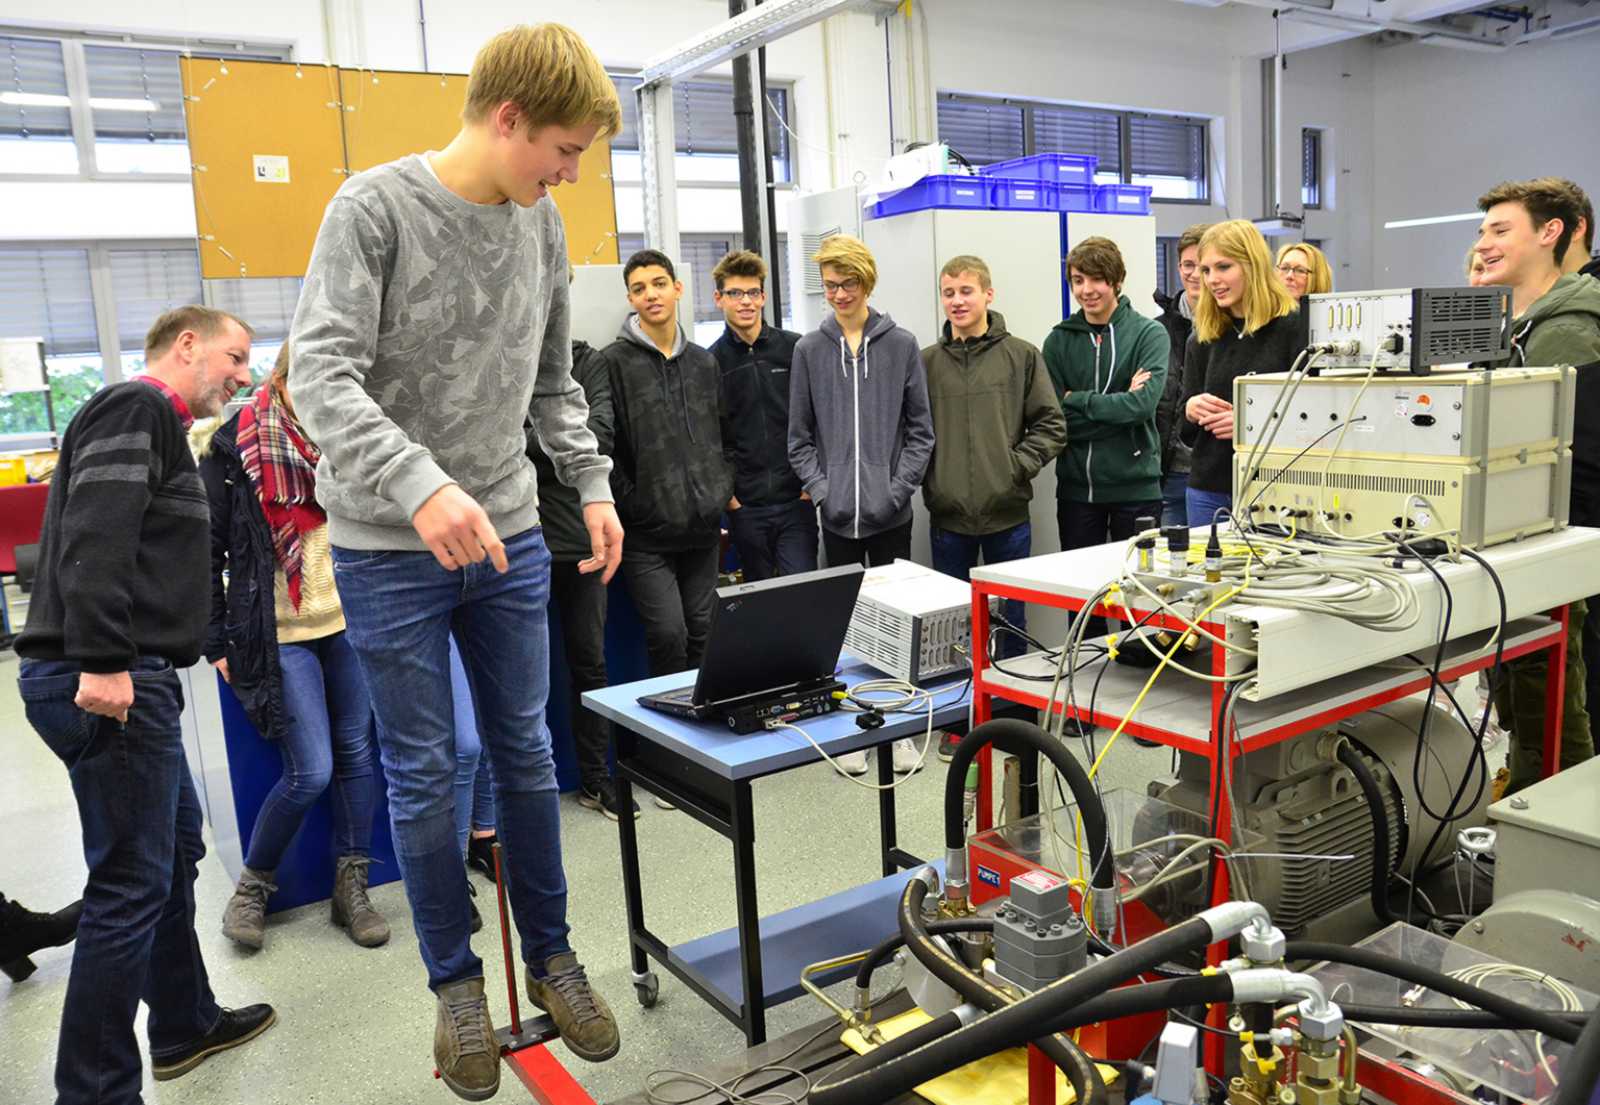 Welche Mechanik steckt in einer Personenwaage? Das konnten sich die Schüler im Labor für Hydraulik und Pneumatik ansehen. (Foto: FH Münster/Pressestelle)